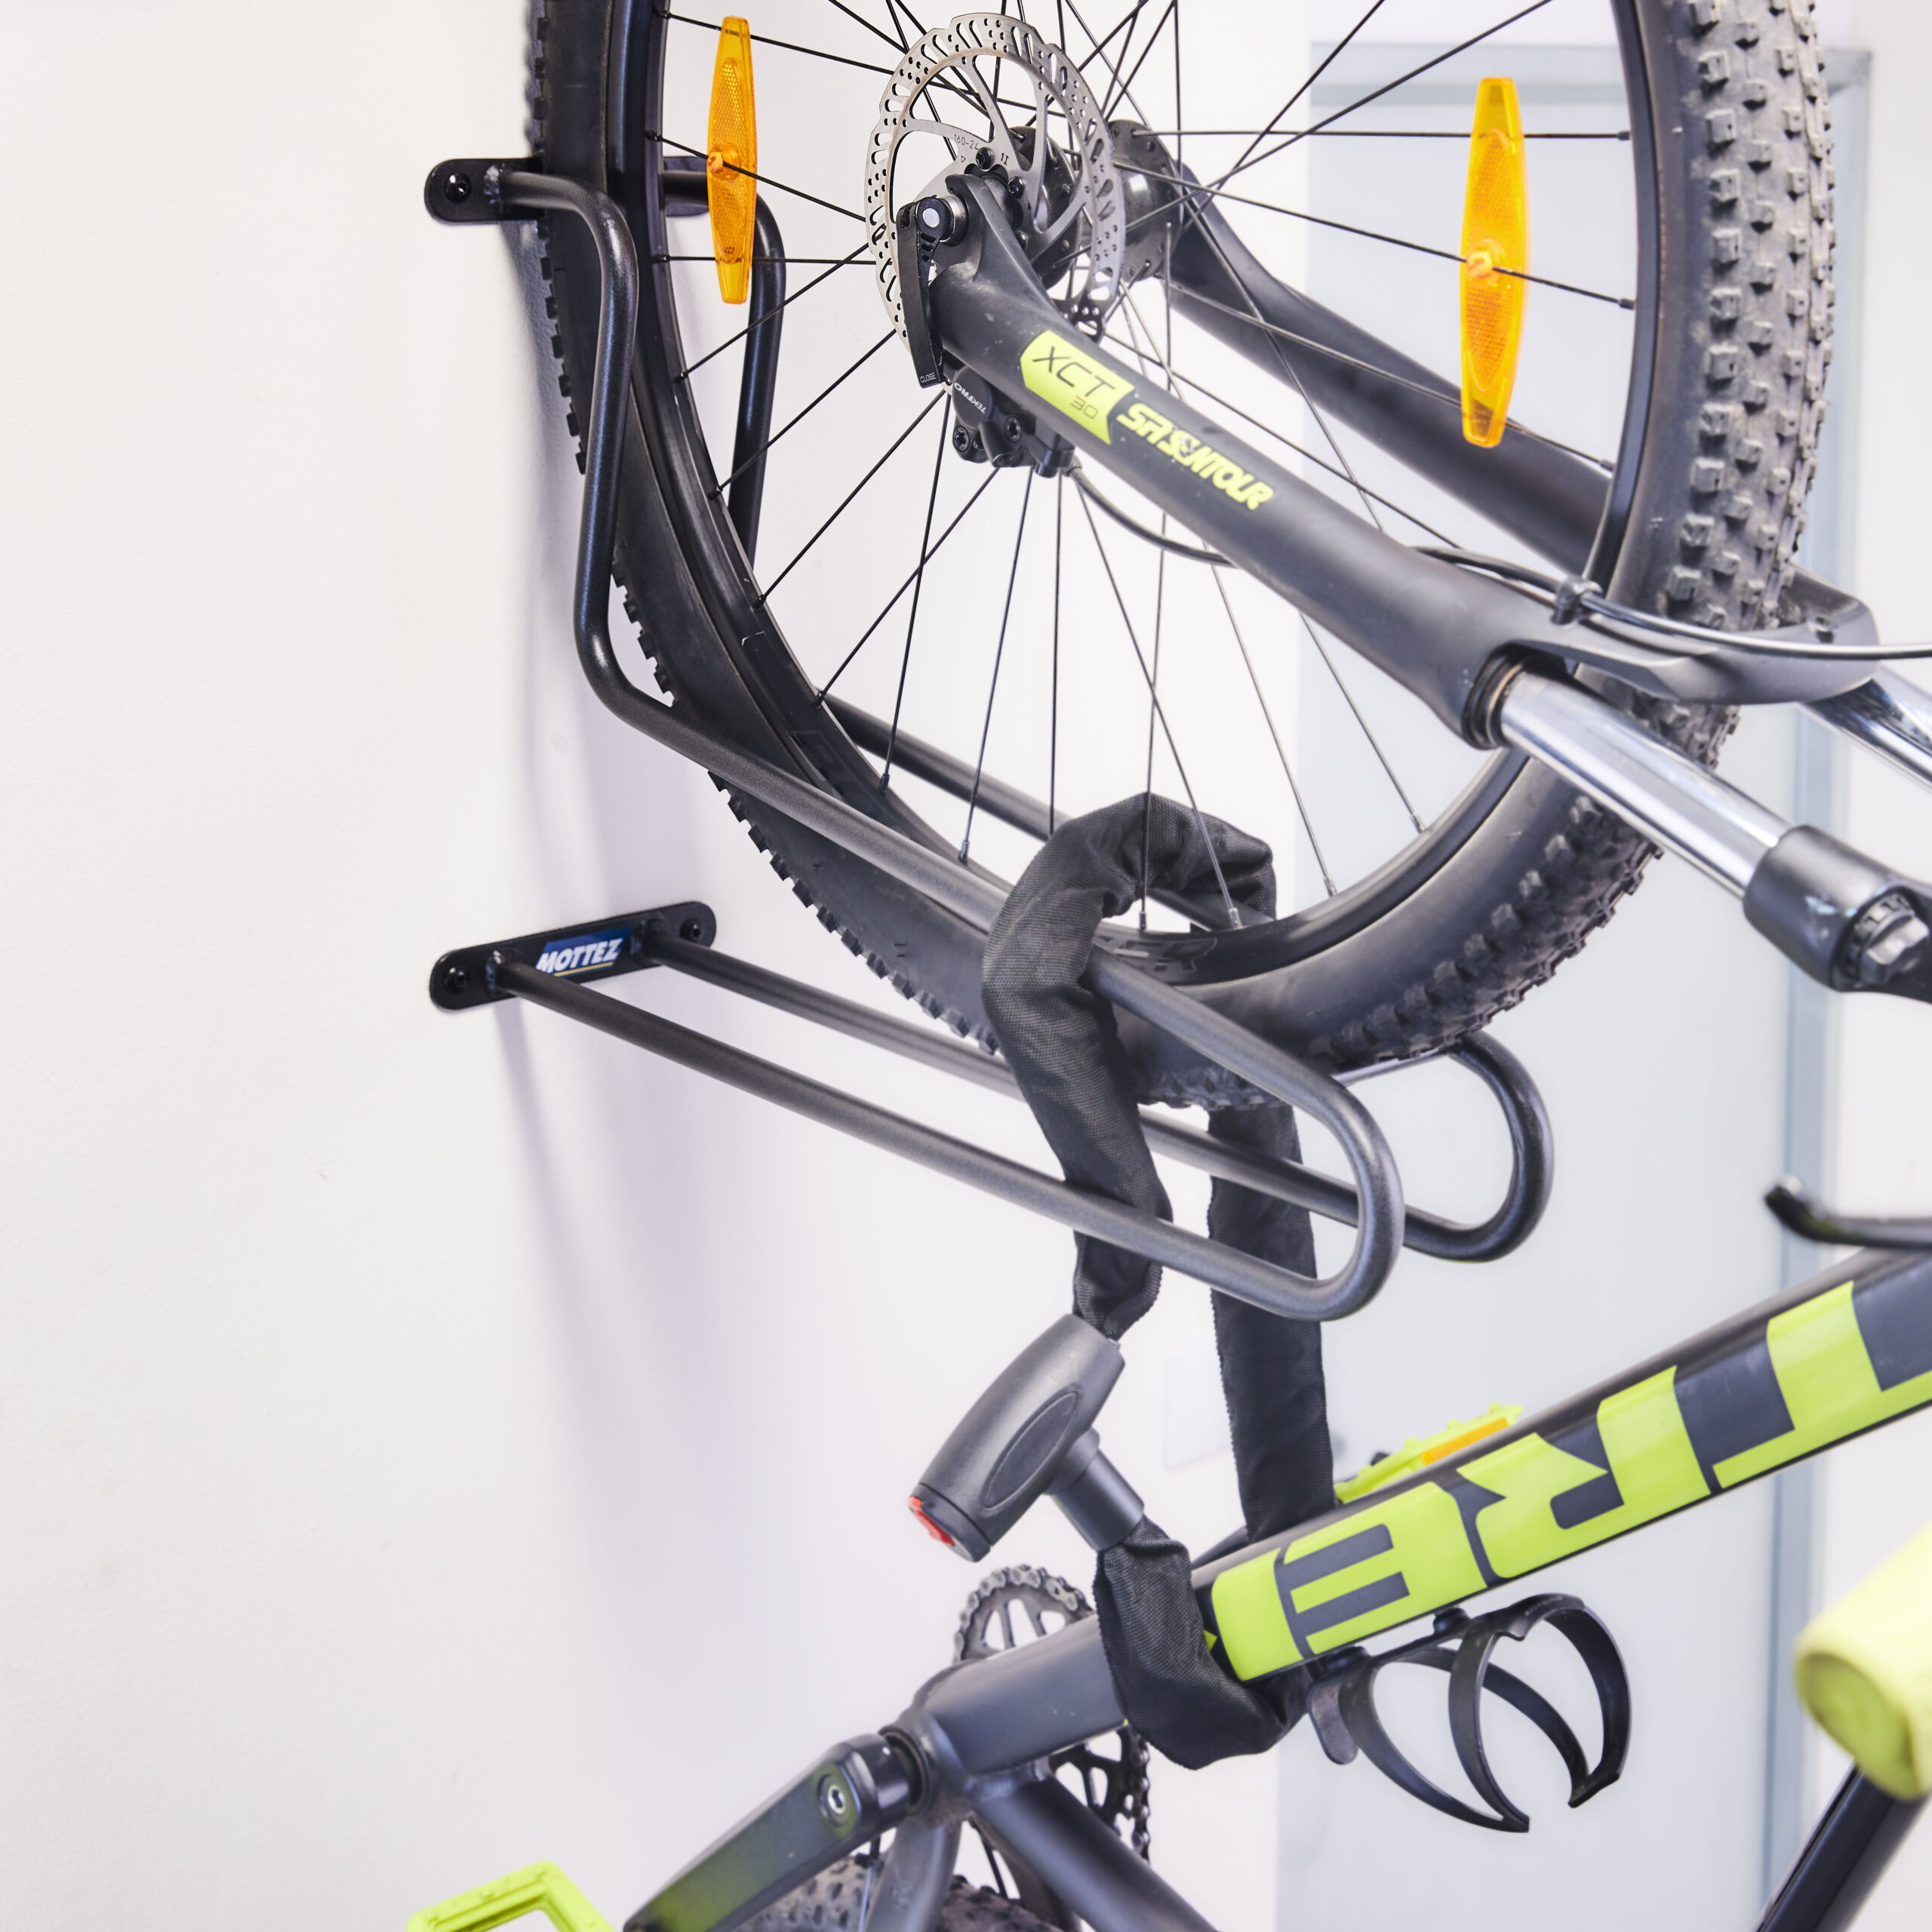 Un support vélo vertical fixe permettant la fixation d'un pneu de vélo M091S se fixe au mur